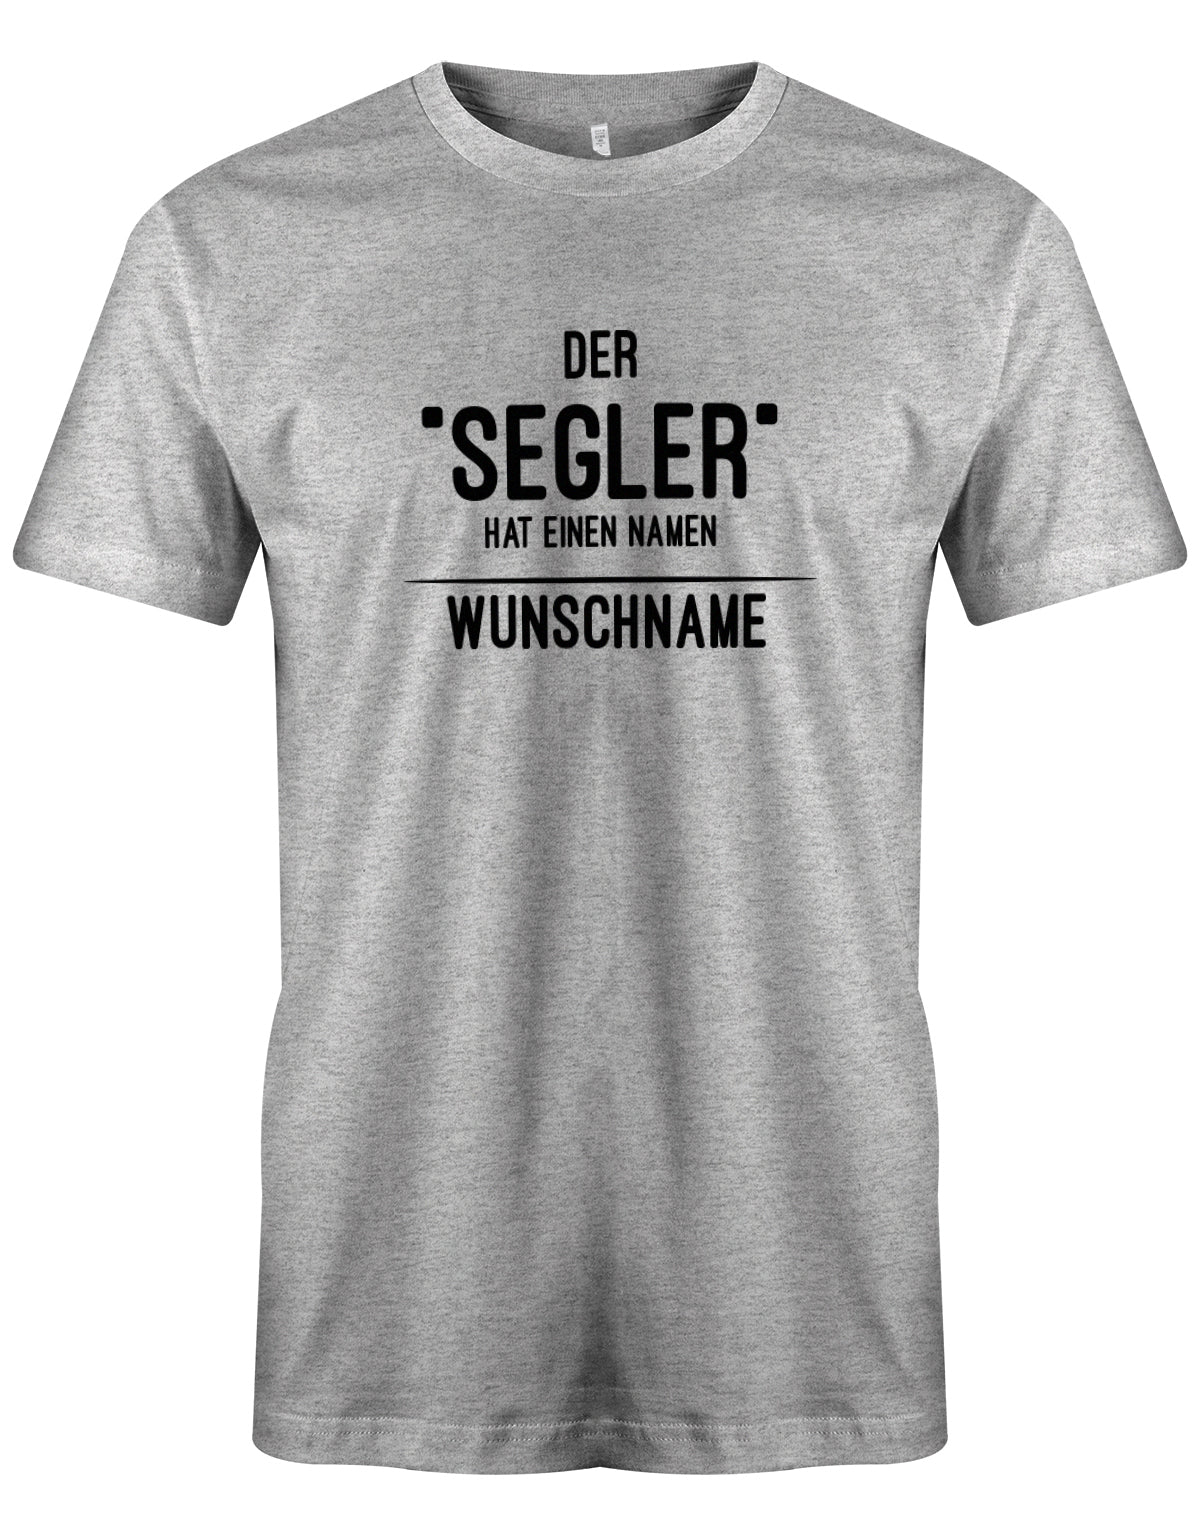 Das Segler t-shirt bedruckt mit "Der Segler hat einen Namen - personalisiert mit Wunschname". Grau